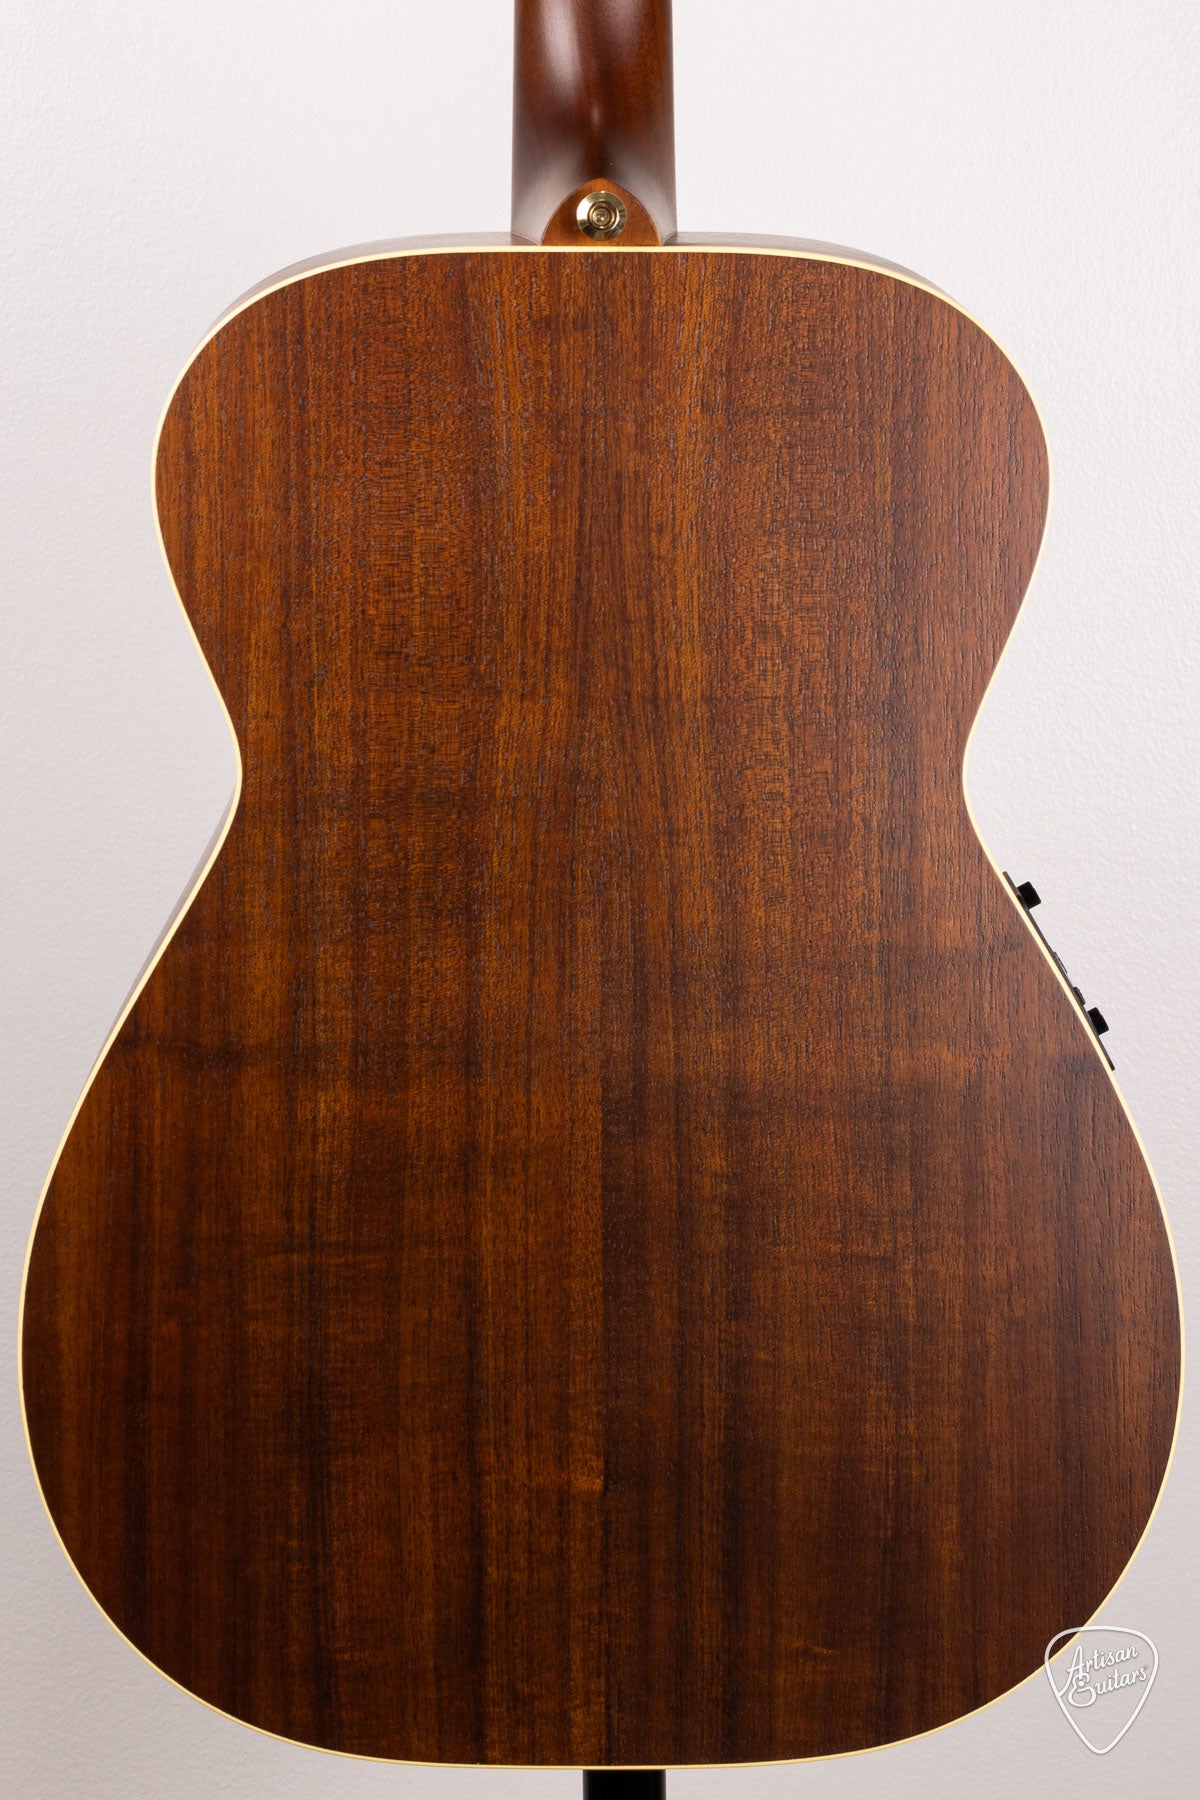 Maton Guitars EBG-808 Nashville - 16578